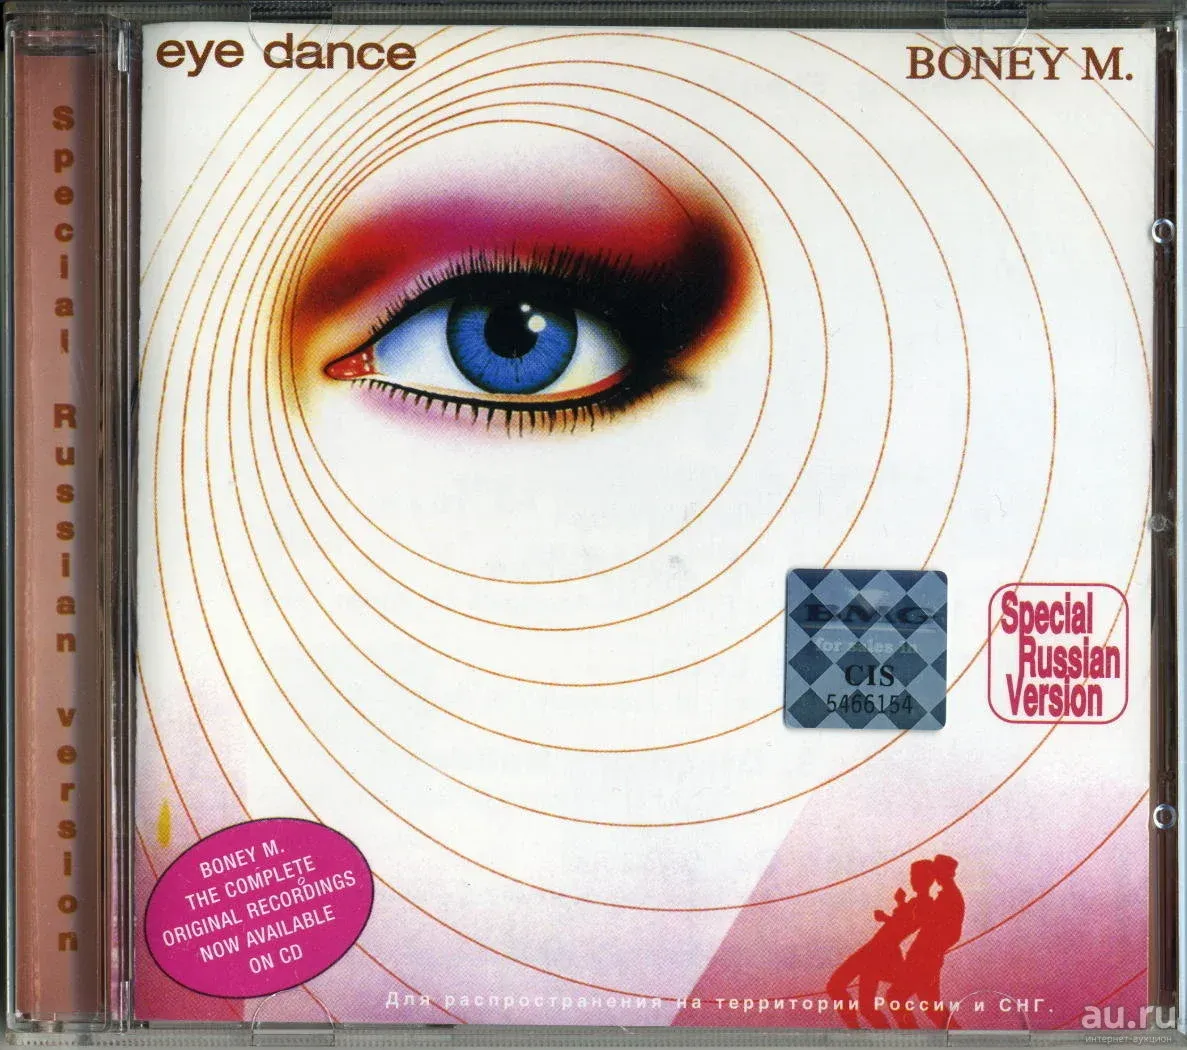 Boney m Eye Dance 1985. Boney m "Eye Dance". Boney m dance